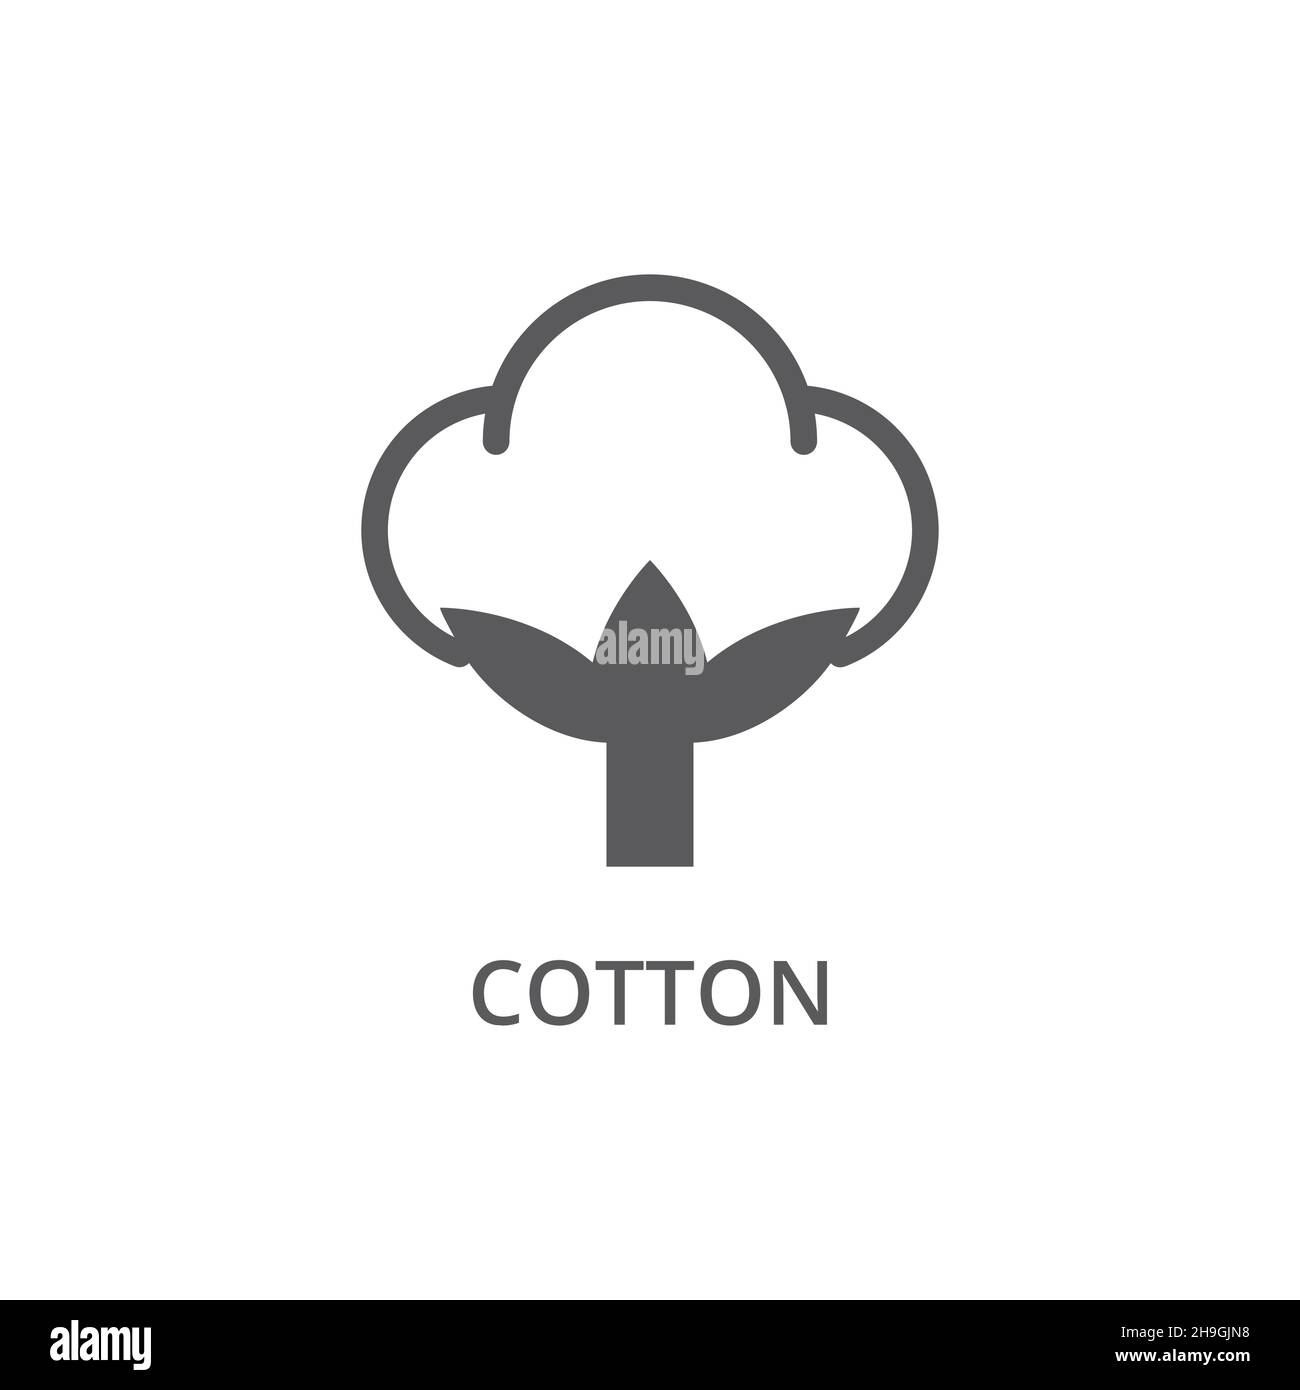 Le tissu en coton est orné d'un symbole vectoriel.Les tissus coton sont marqués d'un symbole. Illustration de Vecteur